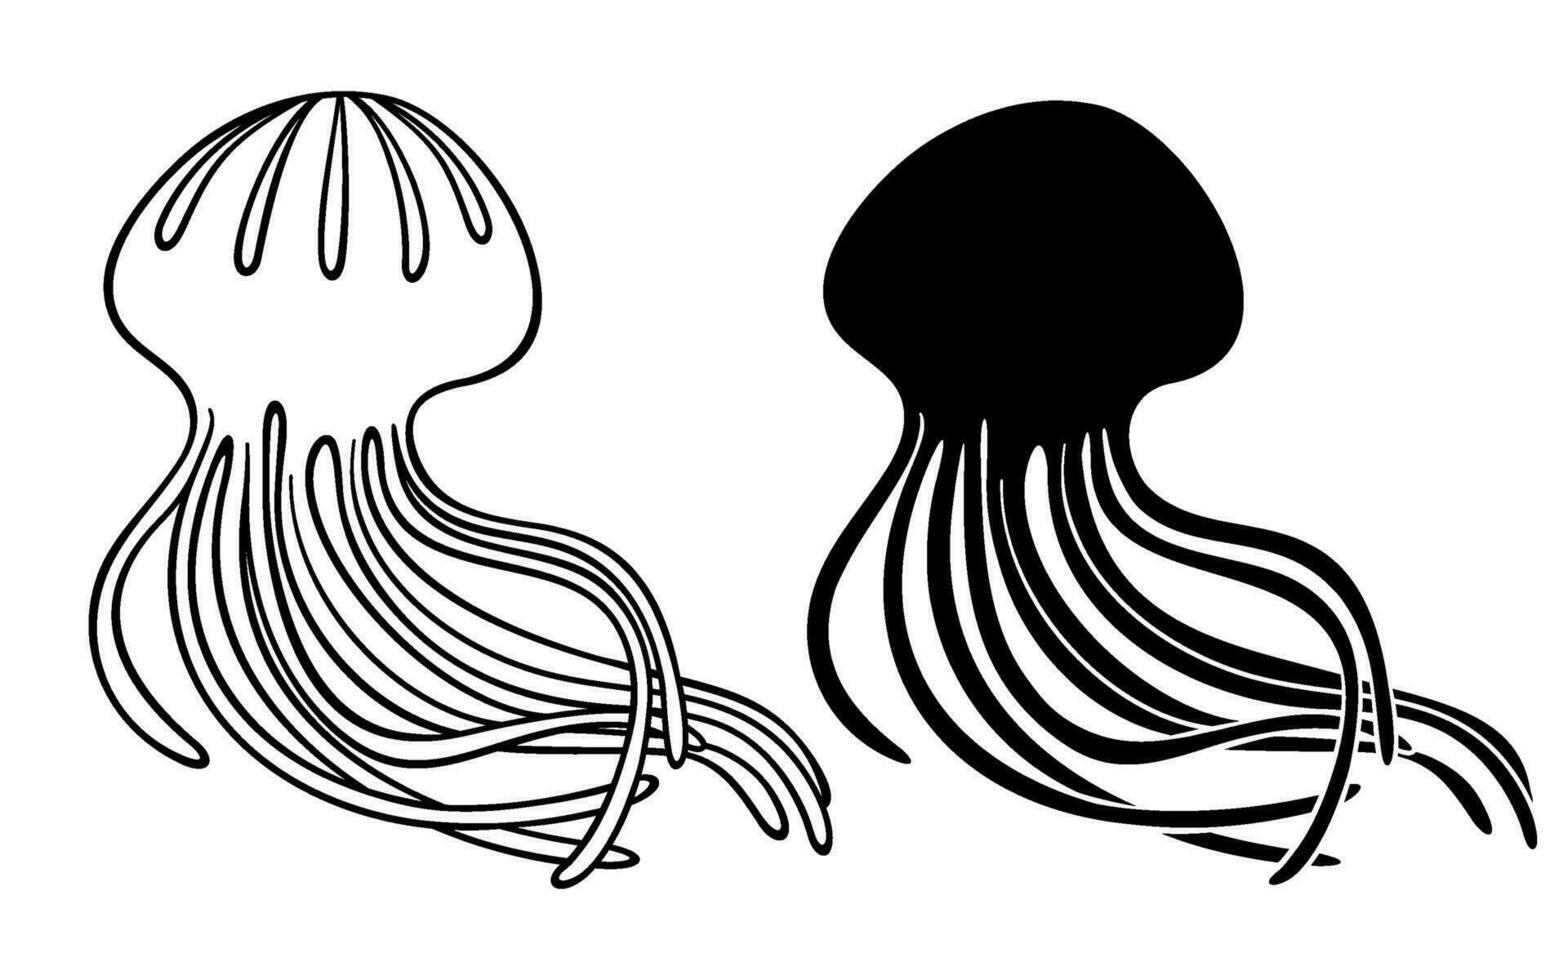 vetor medusa. isolado Preto e branco esboço do mar animal. silhueta e esboço do oceano criatura.